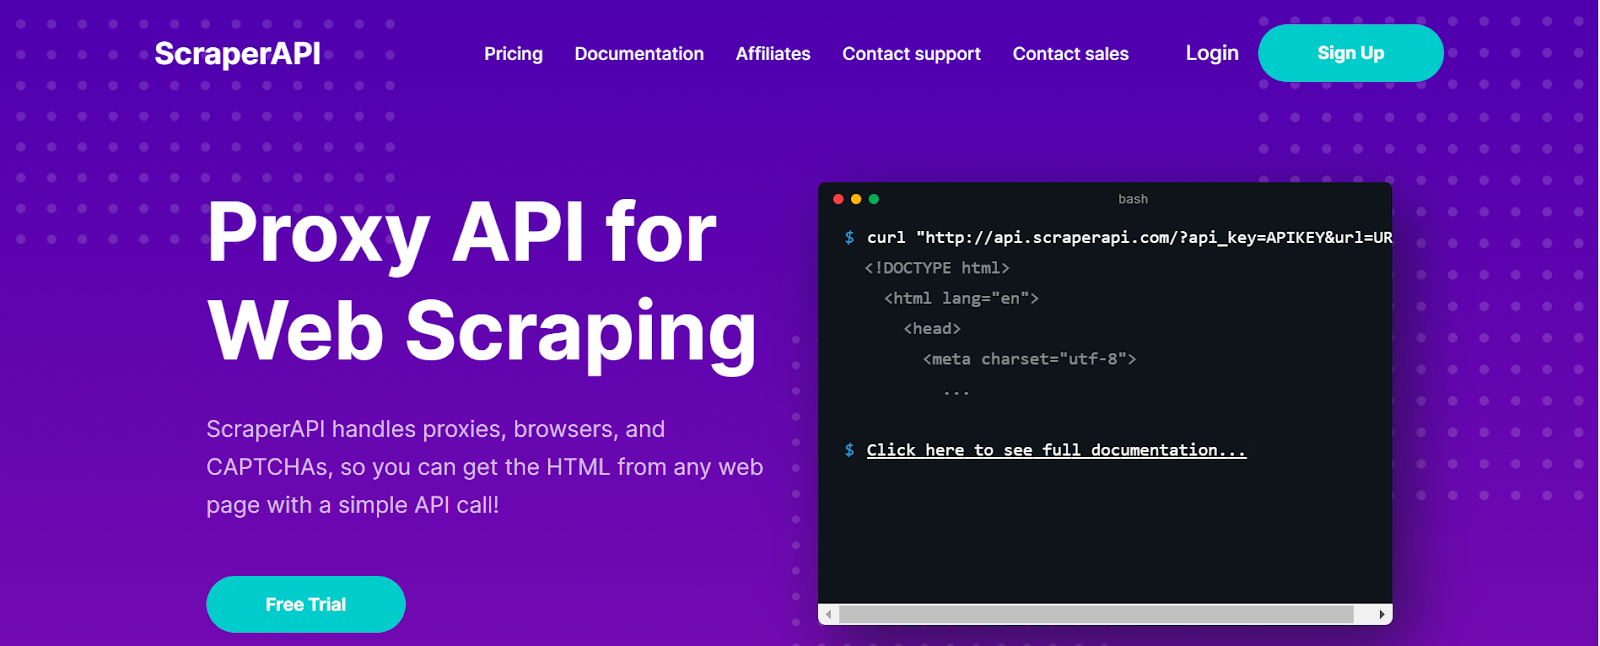 Home Page of ScraperAPI